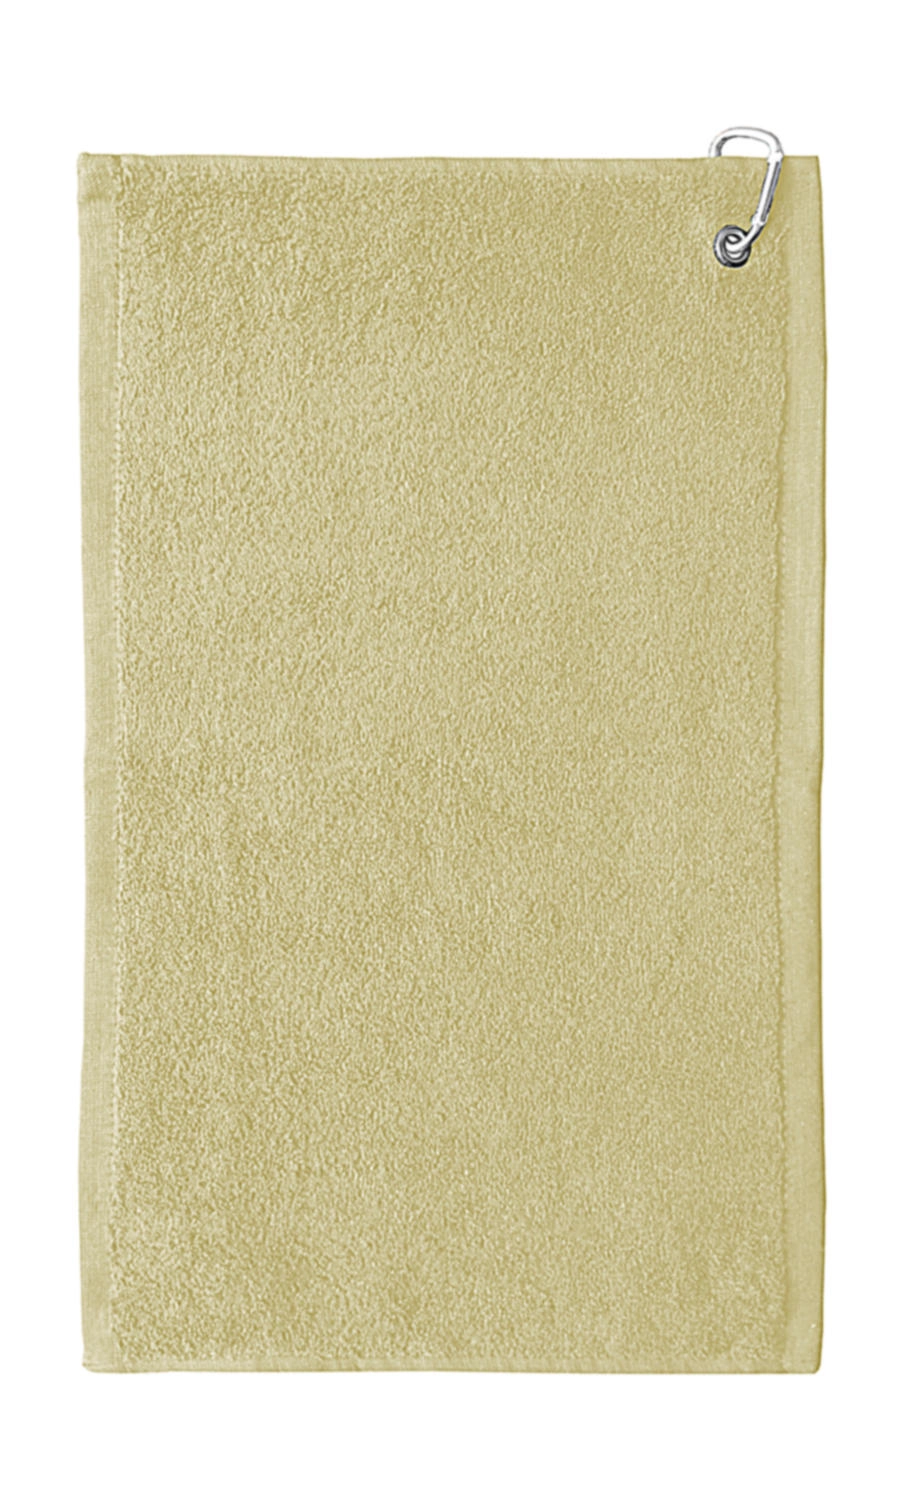 Thames Golf Towel 30x50 cm zum Besticken und Bedrucken in der Farbe Sand mit Ihren Logo, Schriftzug oder Motiv.